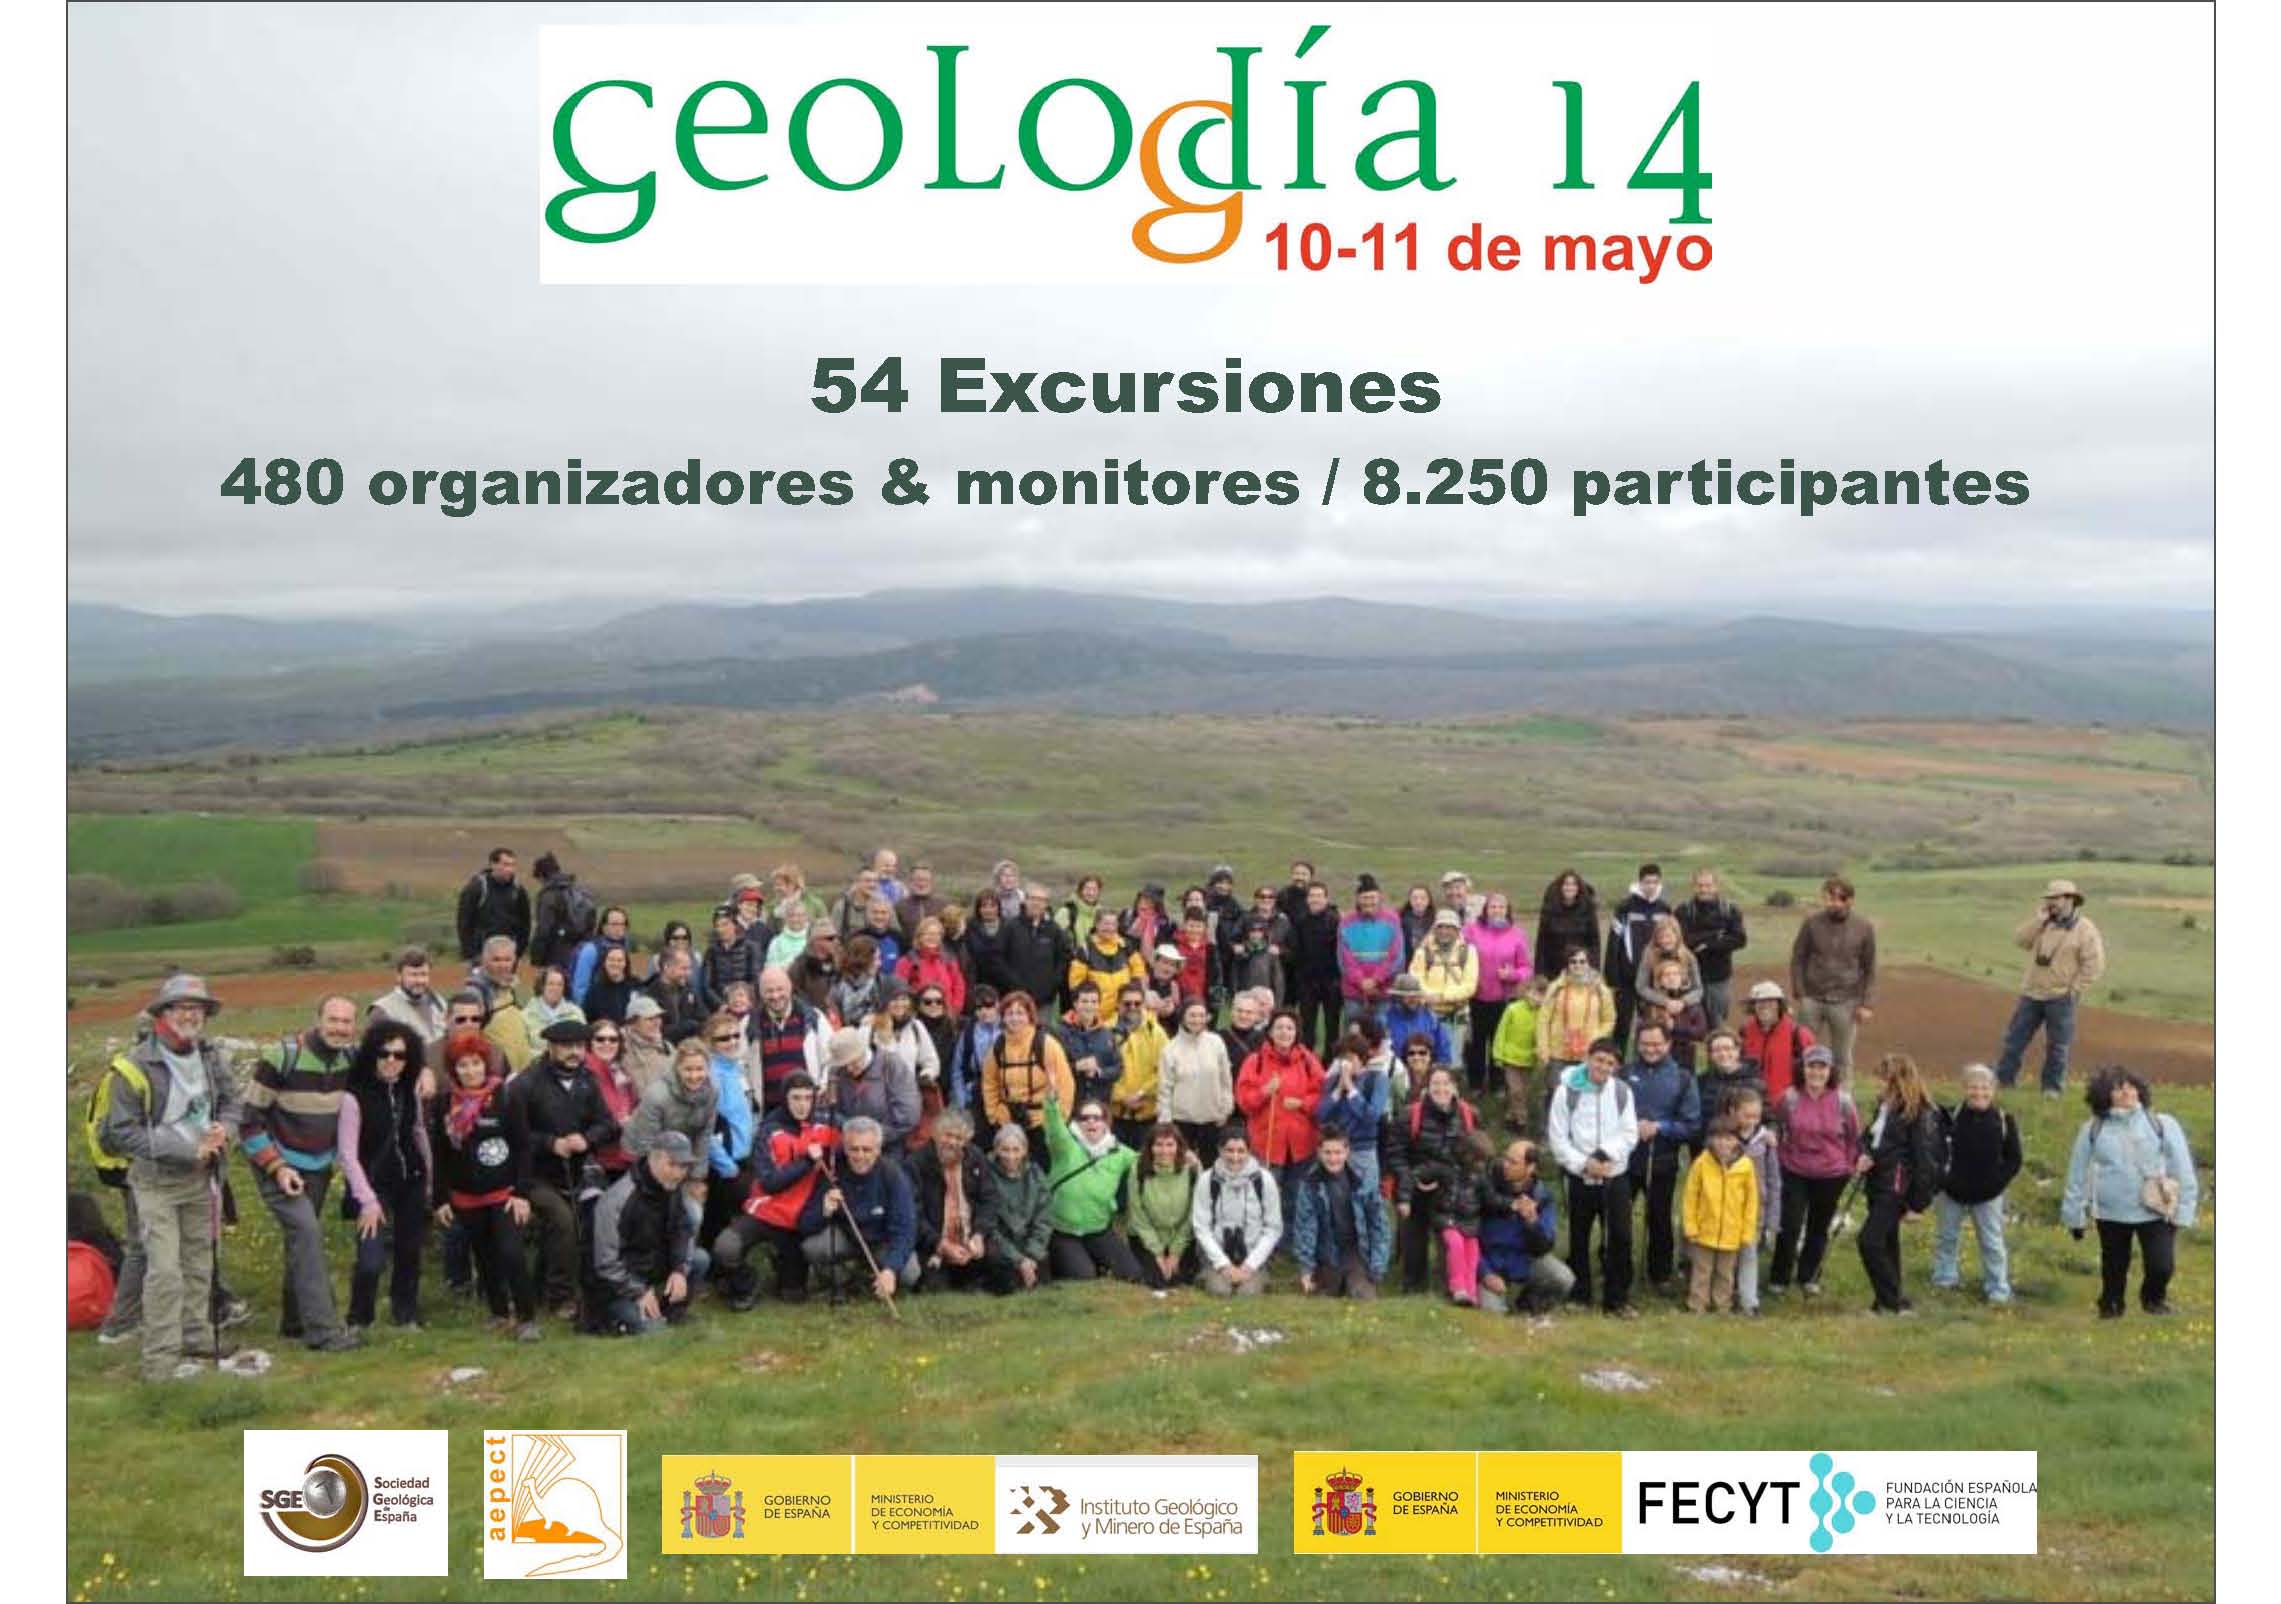 Torna in Spagna l’appuntamento con il Geolodía, “il giorno della Geologia”